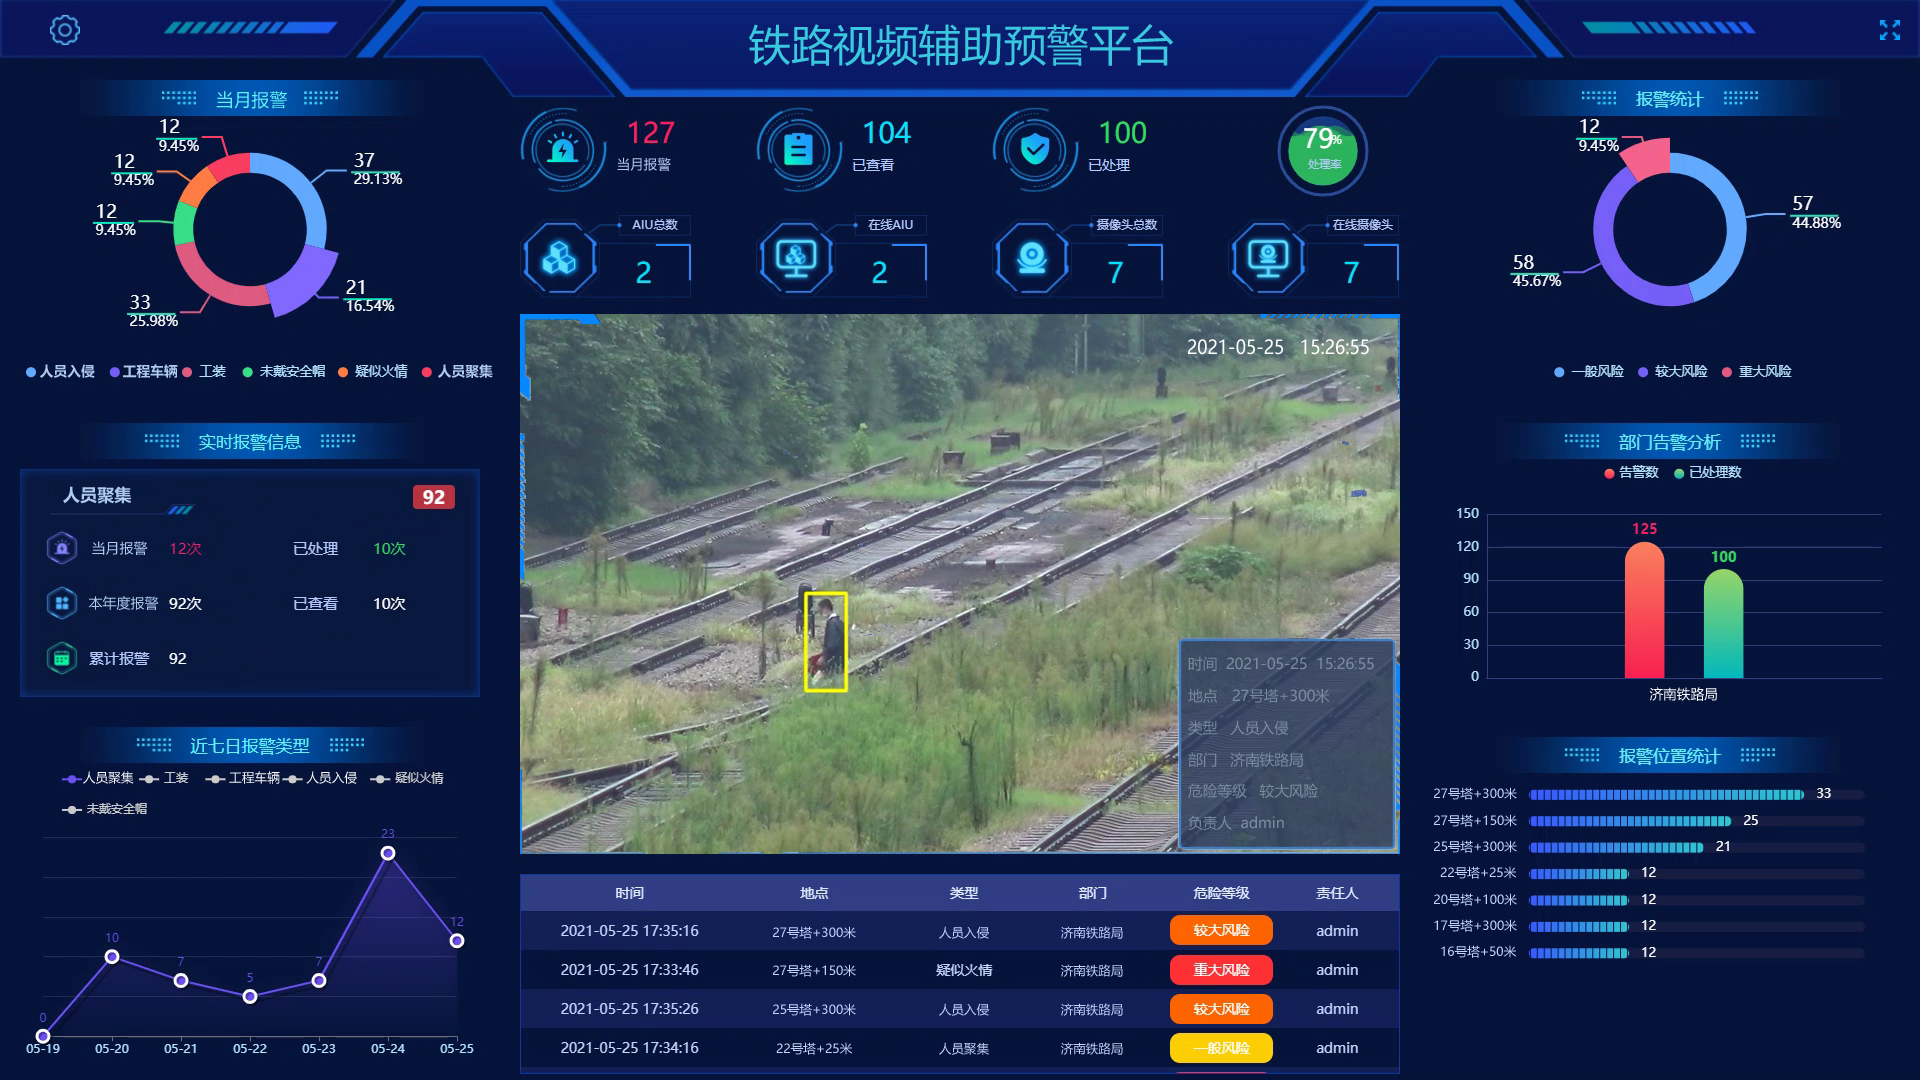 鐵路視頻輔助預警平臺